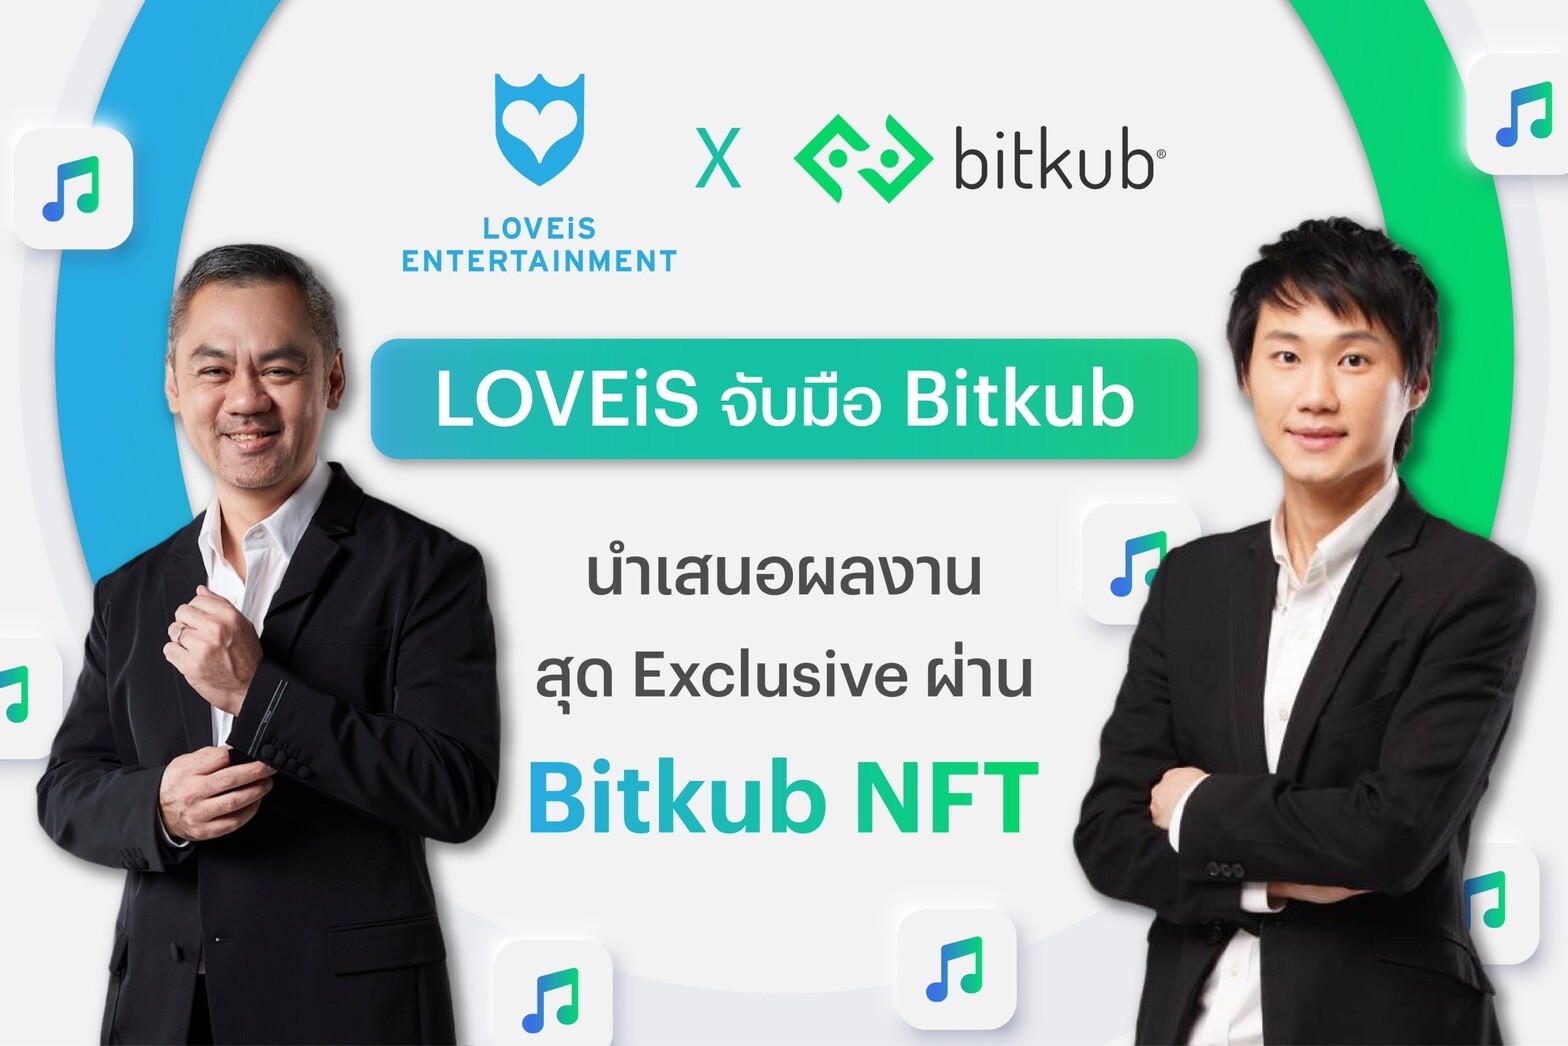 LOVEiS Entertainment ประกาศจับมือเป็นพันธมิตรกับ Bitkub นำผลงานสุด Exclusive ของศิลปินเข้าแพลตฟอร์ม เปิดการซื้อขาย NFT Marketplace